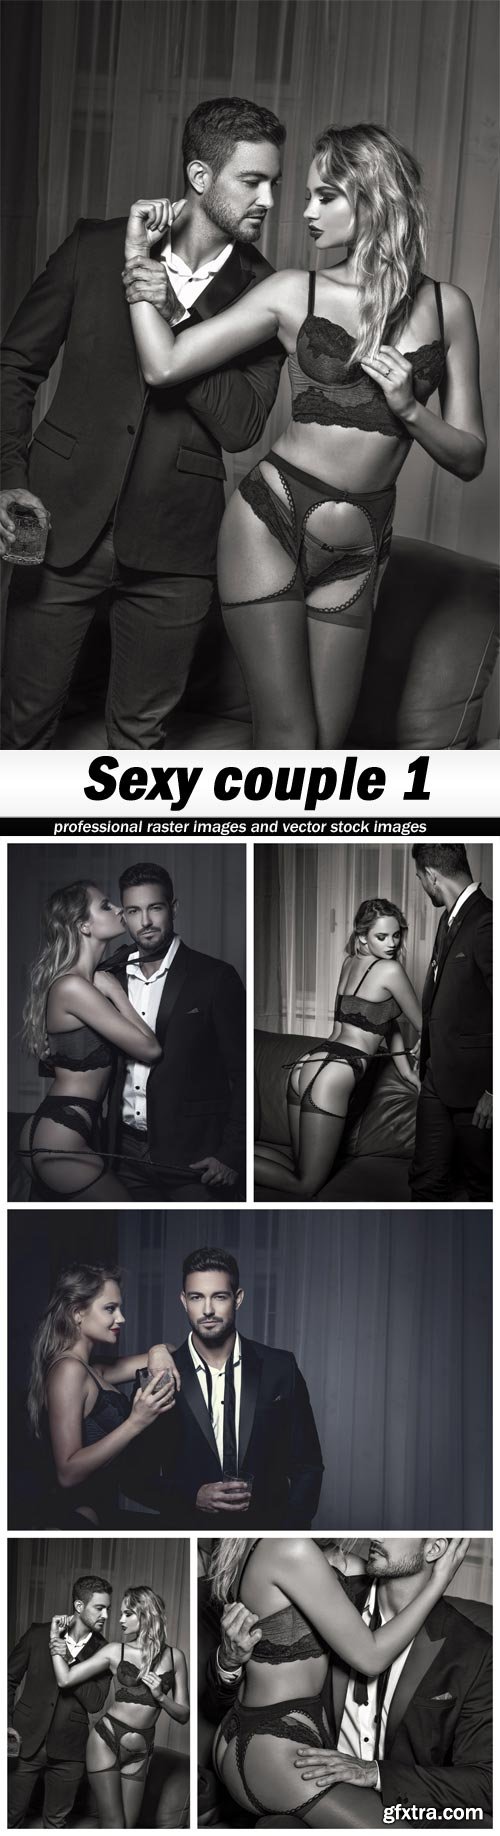 Sexy couple 1 - 5 UHQ JPEG